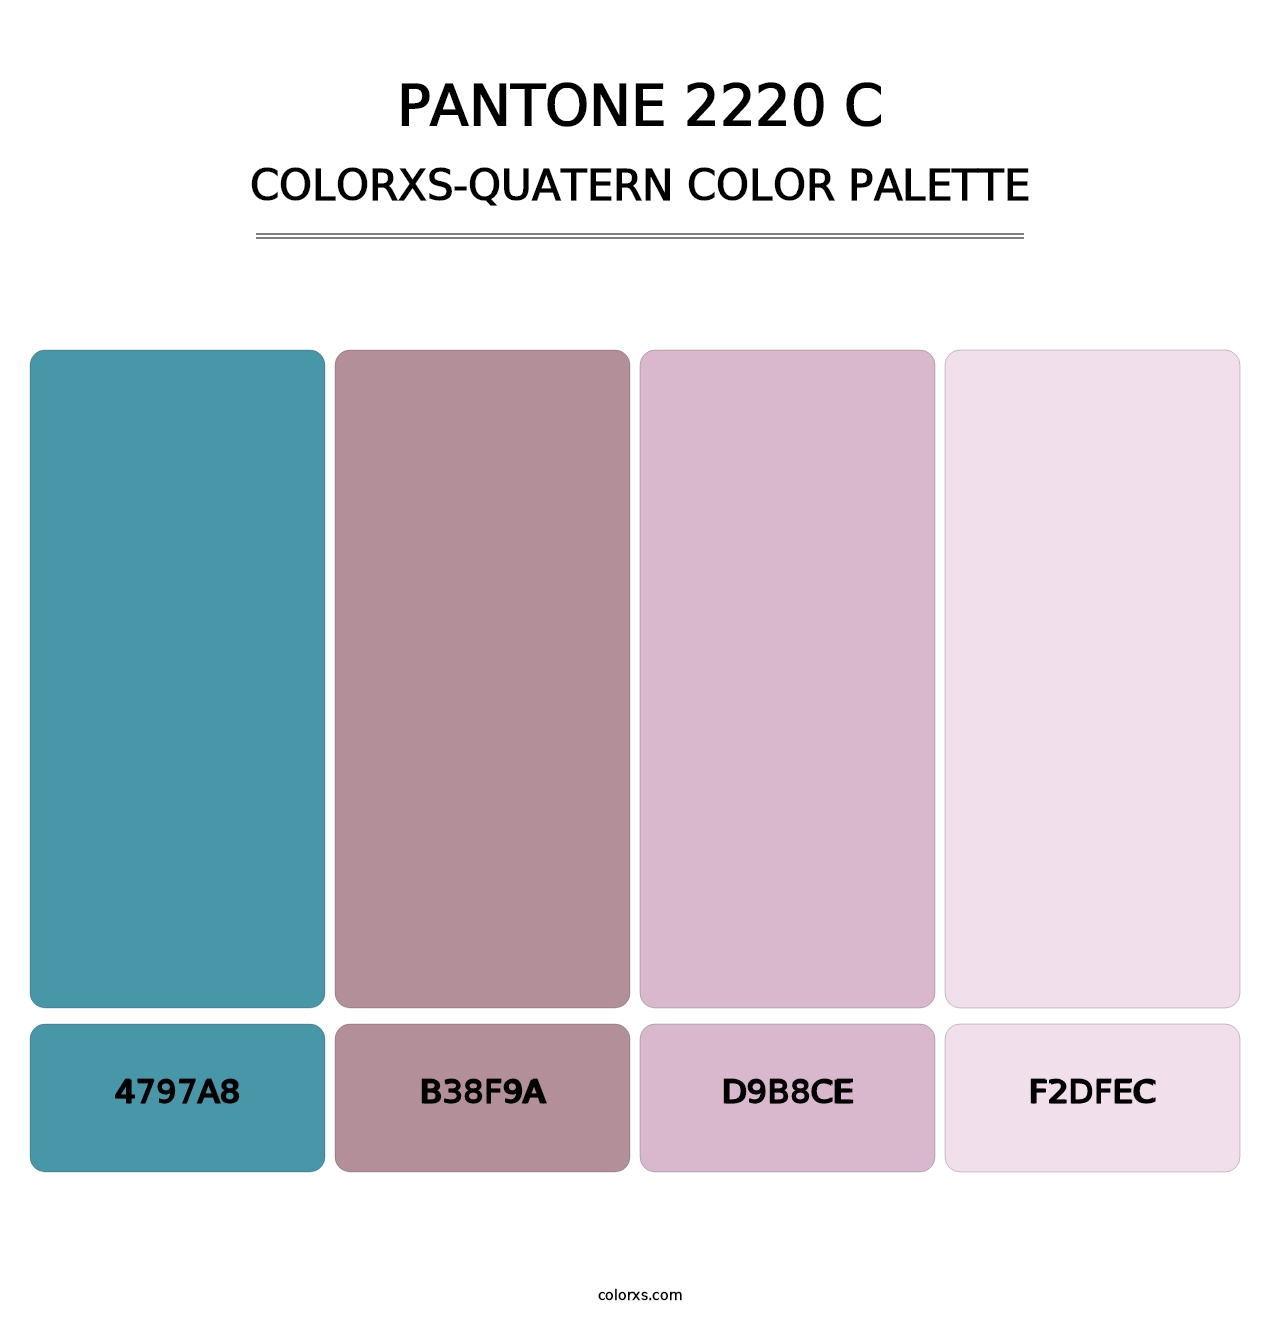 PANTONE 2220 C - Colorxs Quatern Palette